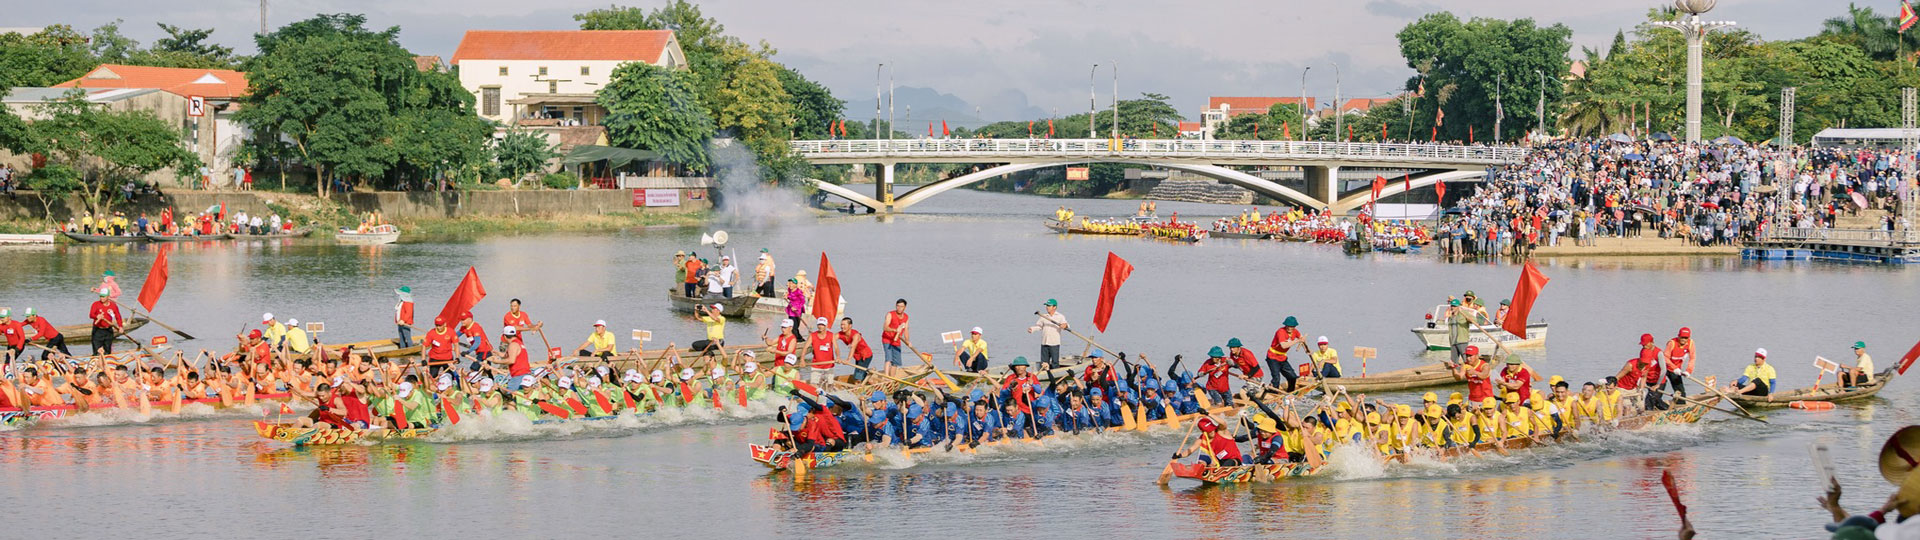 Lễ hội đua thuyền được tổ chức thường niên vào các dịp lễ tại Huyện Lệ Thủy Quảng Bình